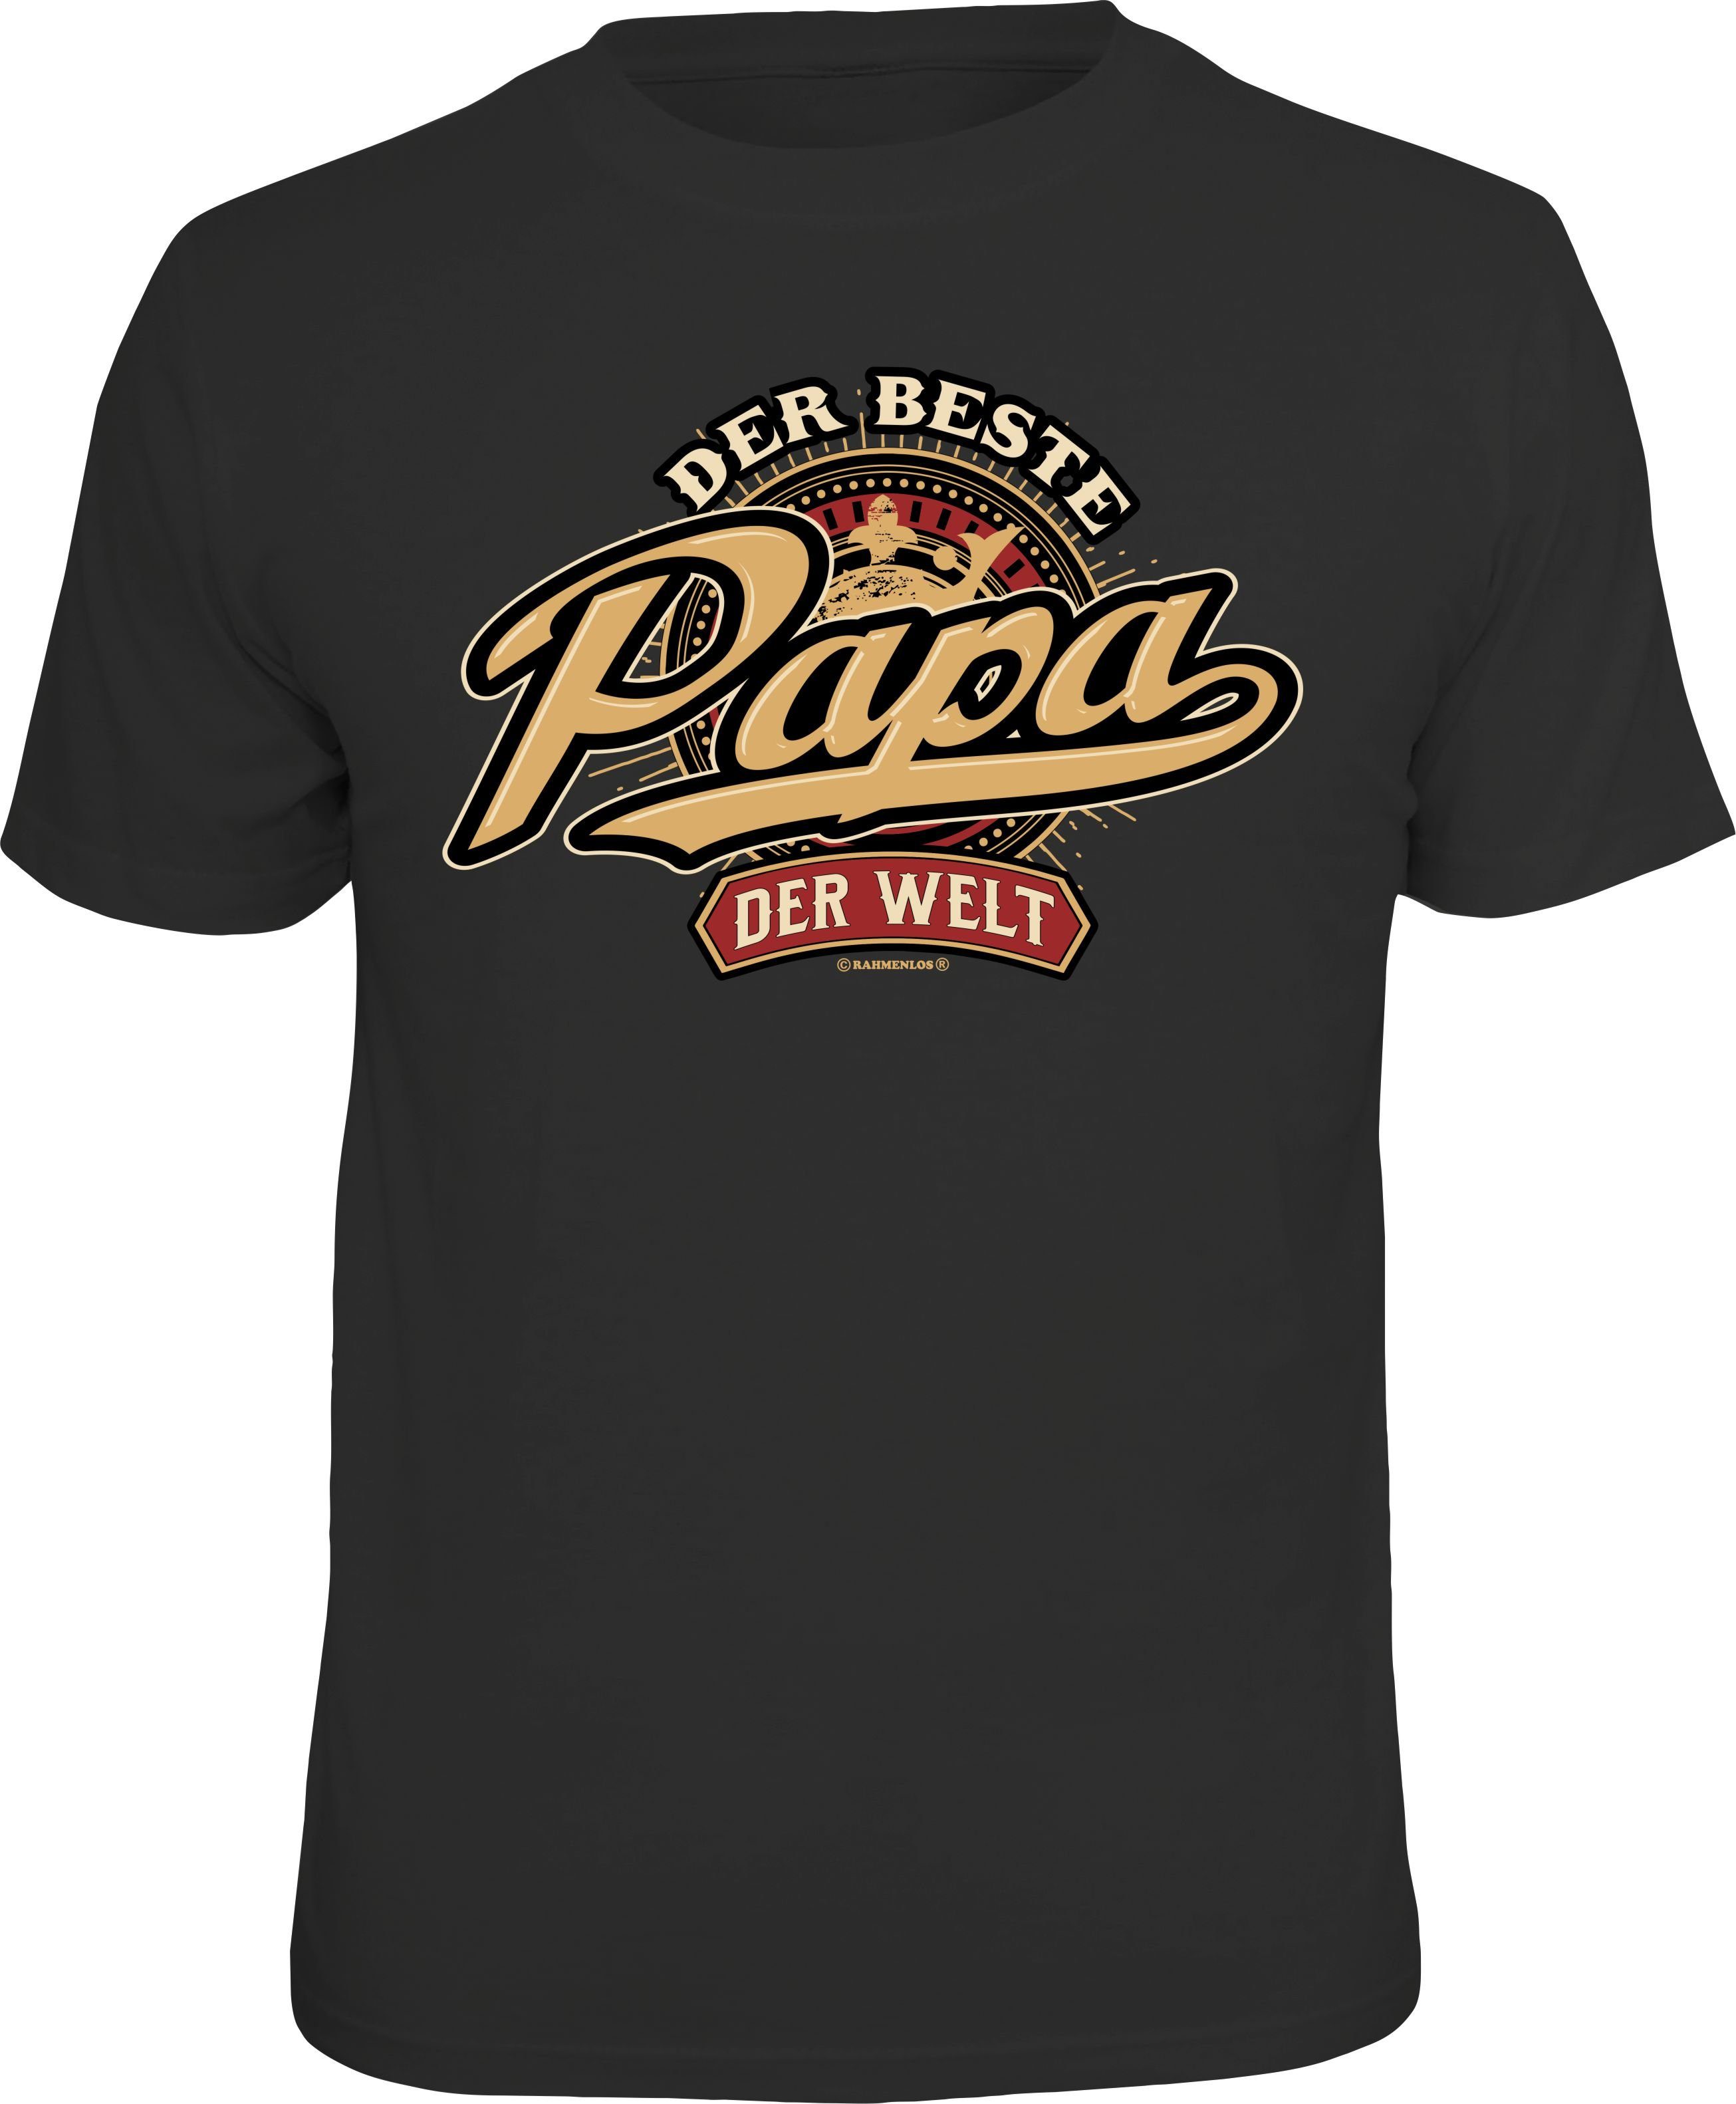 T-Shirt für Welt der Das Geschenk - Bester Rahmenlos Papa Väter